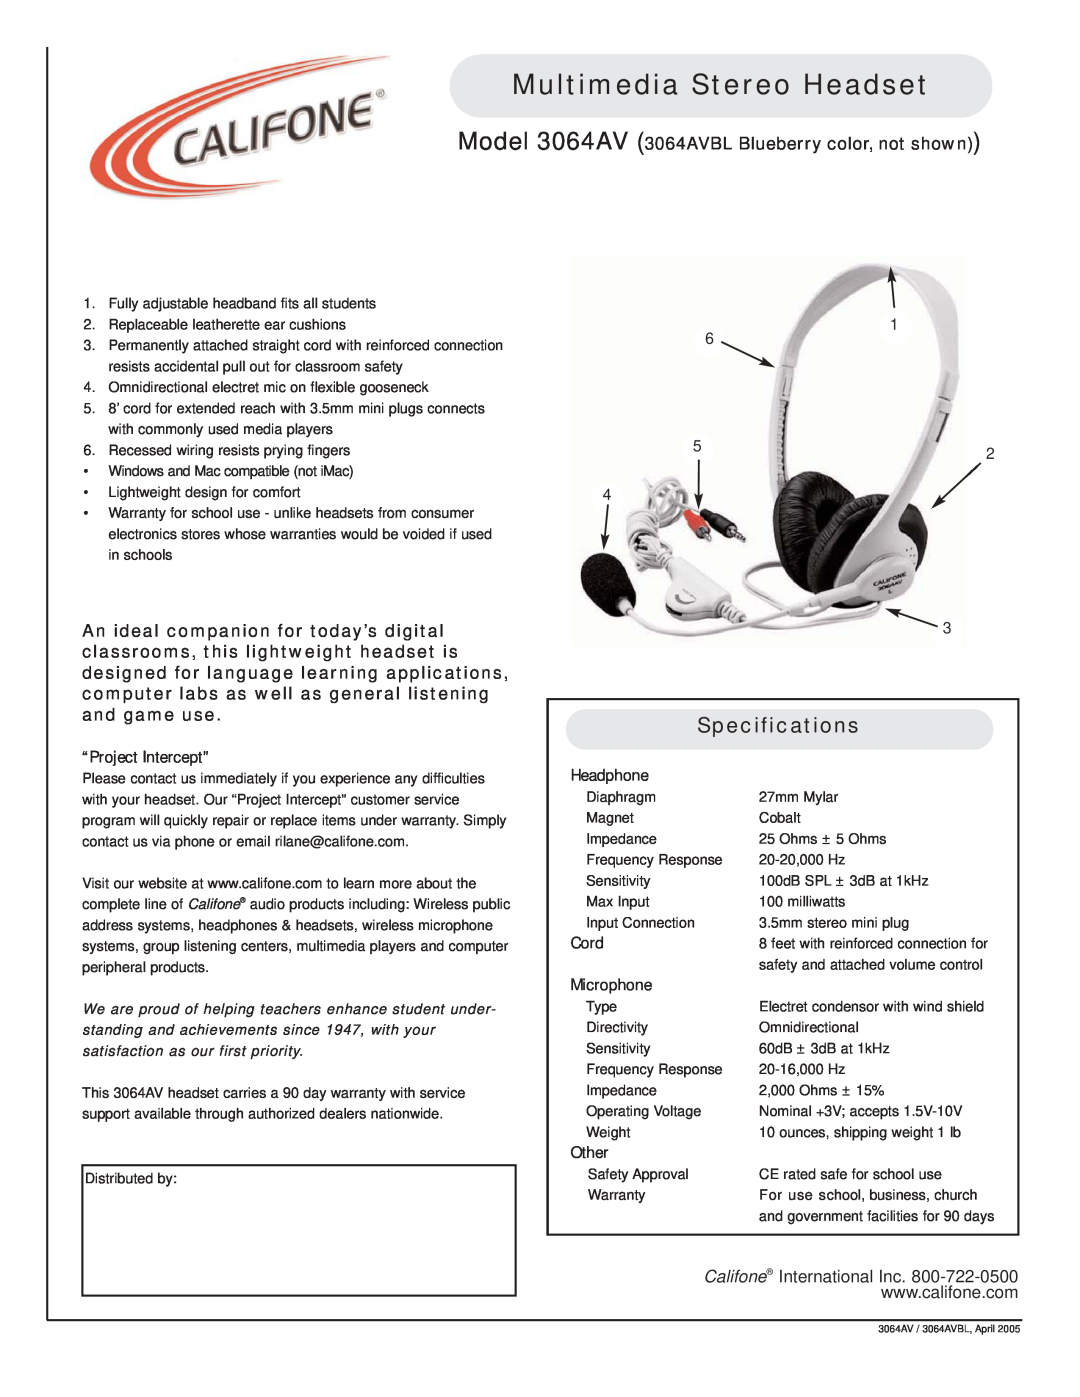 Califone specifications Multimedia Stereo Headset, Specifications, Model 3064AV 3064AVBL Blueberry color, not shown 